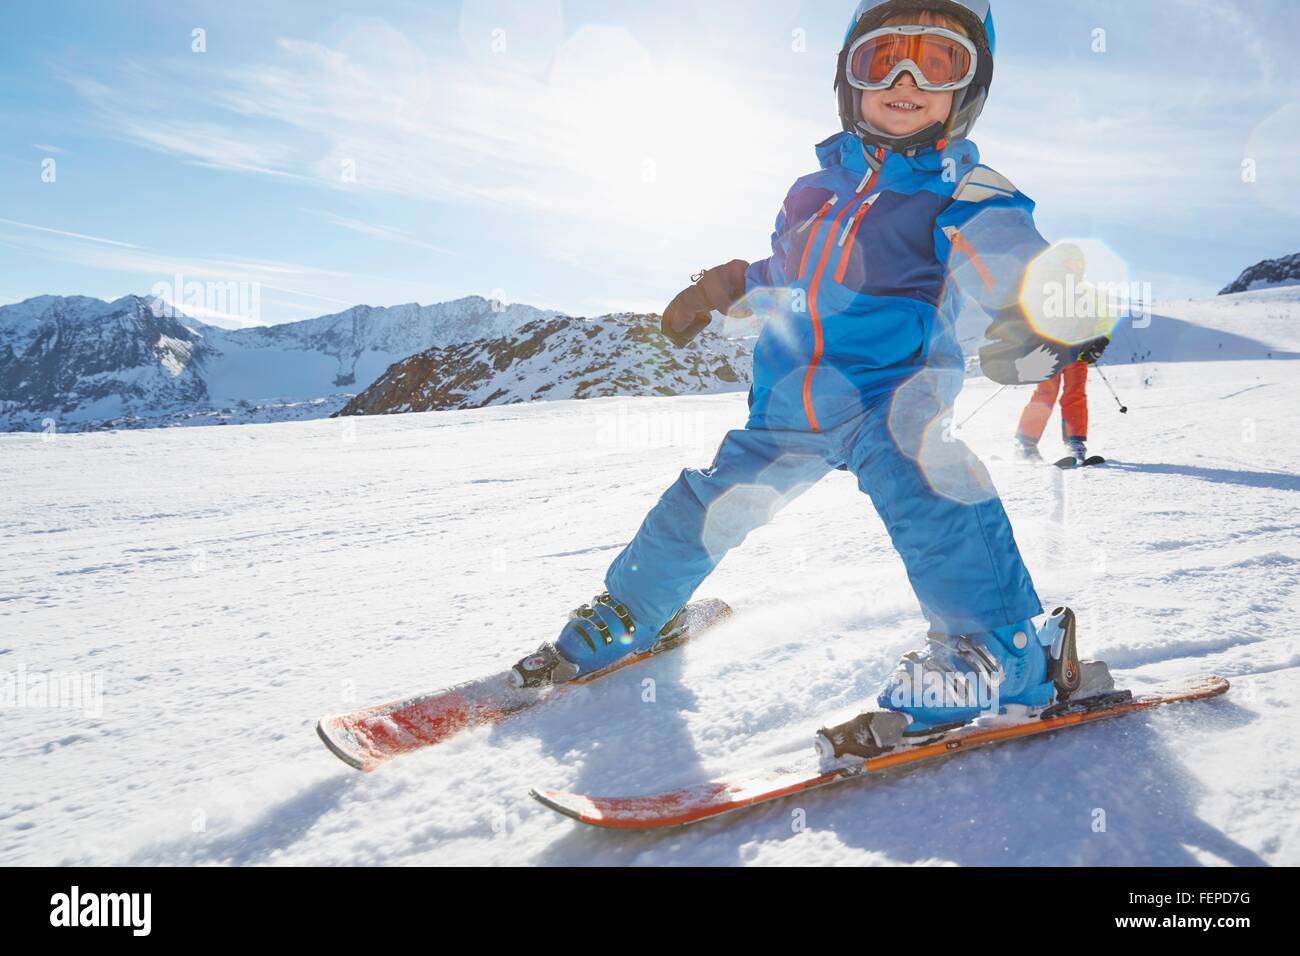 Les garçons, ski Stubai, Tyrol, Autriche Banque D'Images